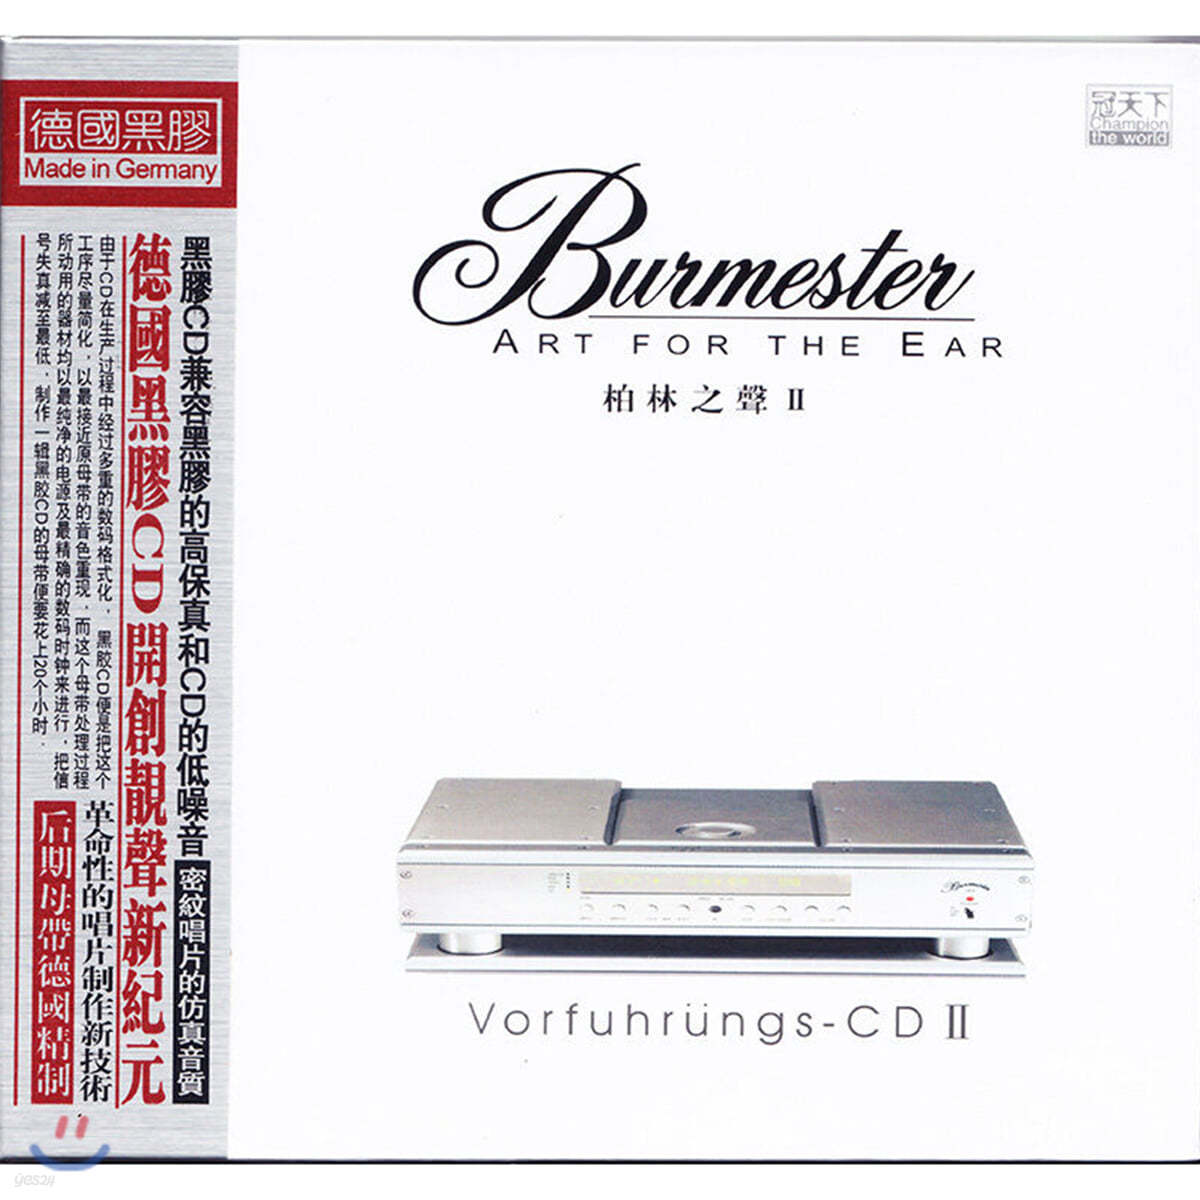 버메스터와 콜라보레이션한 오디오파일 테스트 음반 2집 (Burmester: Art For The Ear Vol.2)